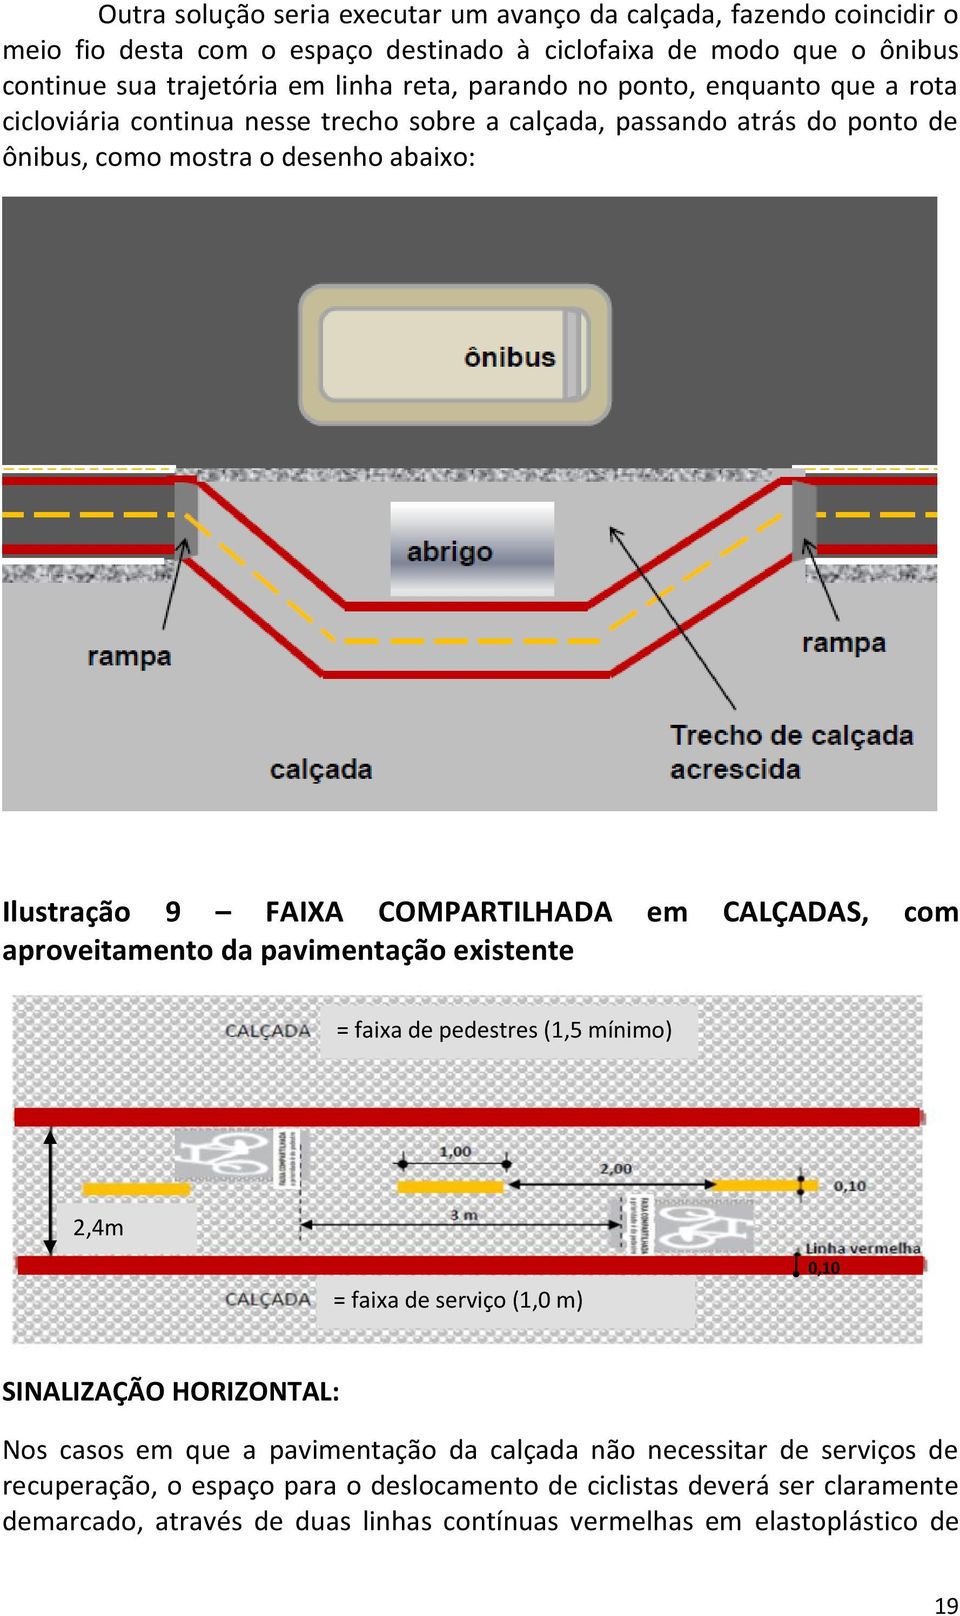 em CALÇADAS, com aproveitamento da pavimentação existente = faixa de pedestres (1,5 mínimo) 2,4m = faixa de serviço (1,0 m) 0,10 SINALIZAÇÃO HORIZONTAL: Nos casos em que a pavimentação da